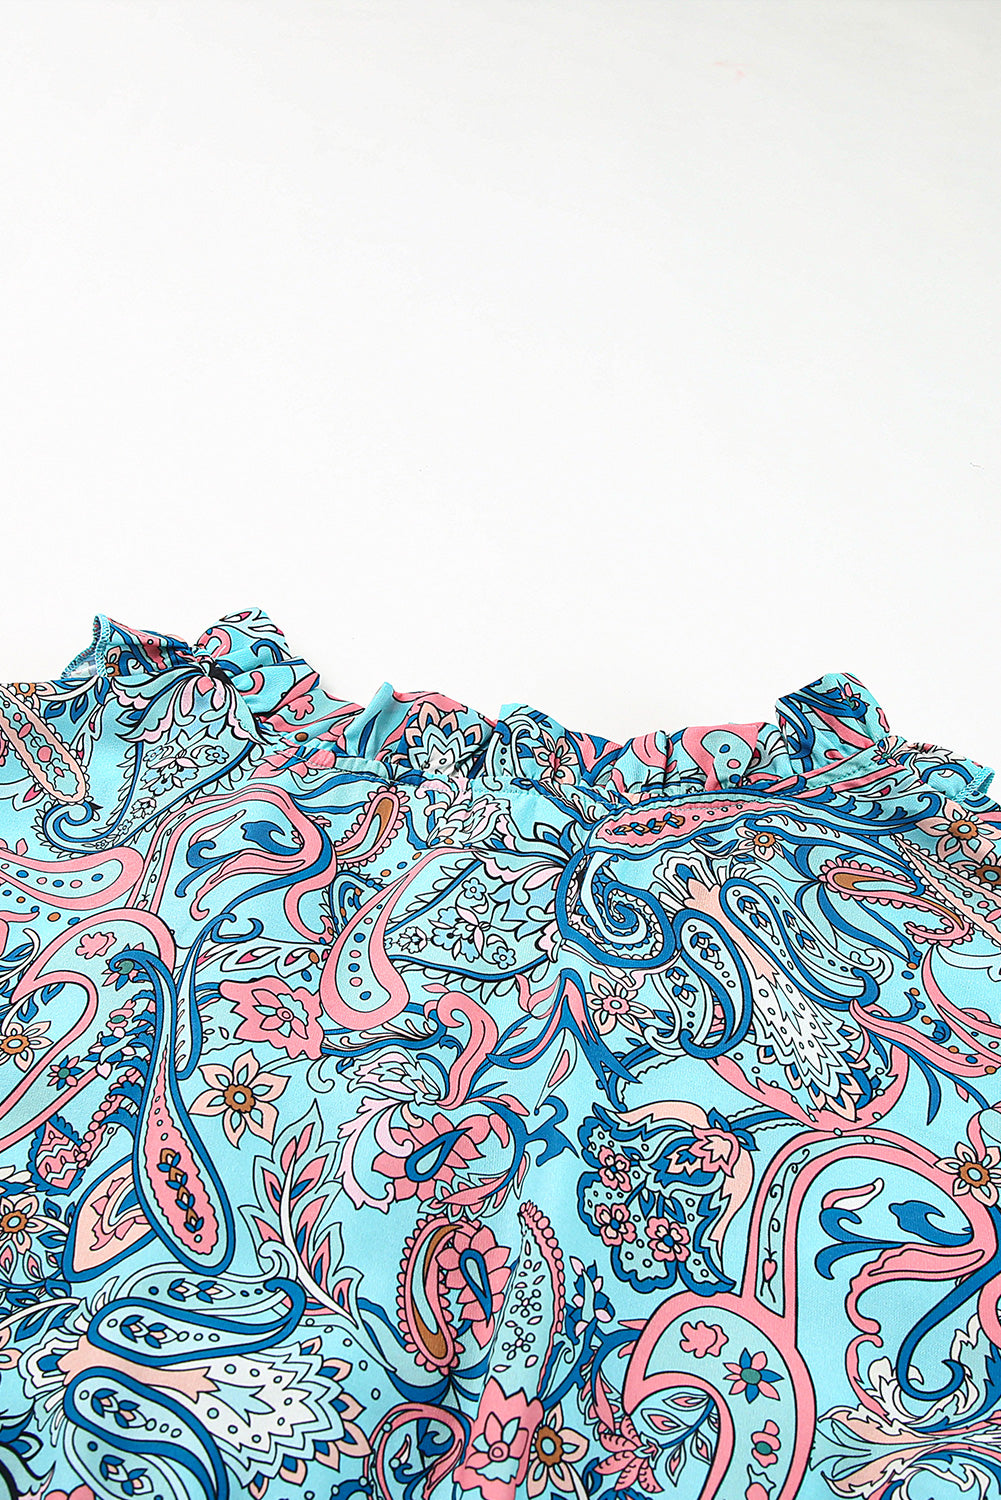 Himmelblaues, gestuftes Maxikleid im Boho-Stil mit Paisley-Print und Rüschen